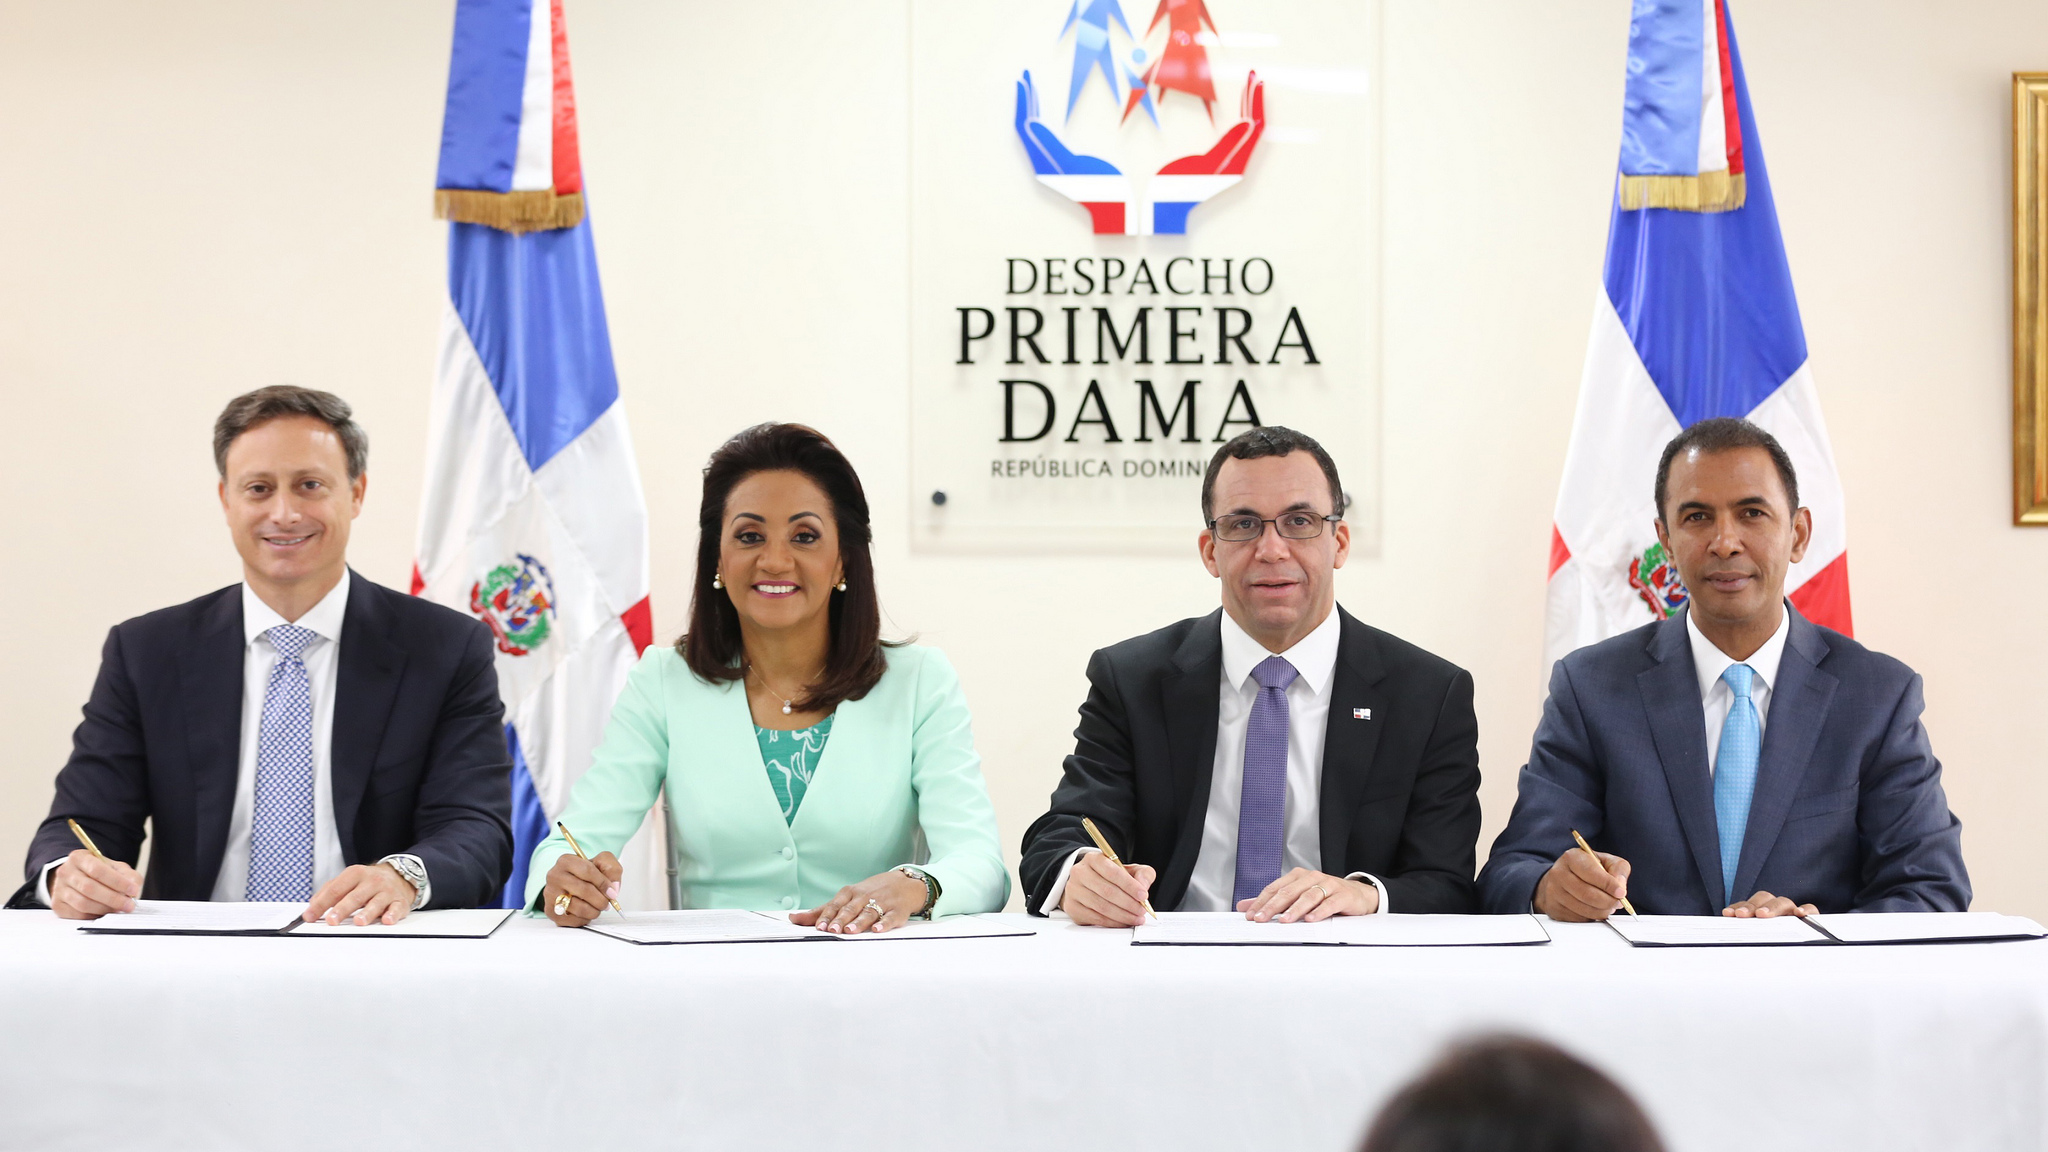 REPÚBLICA DOMINICANA: Despacho Primera Dama y cuatro instituciones pondrán en servicio hogar escuela para niños en condición de calle